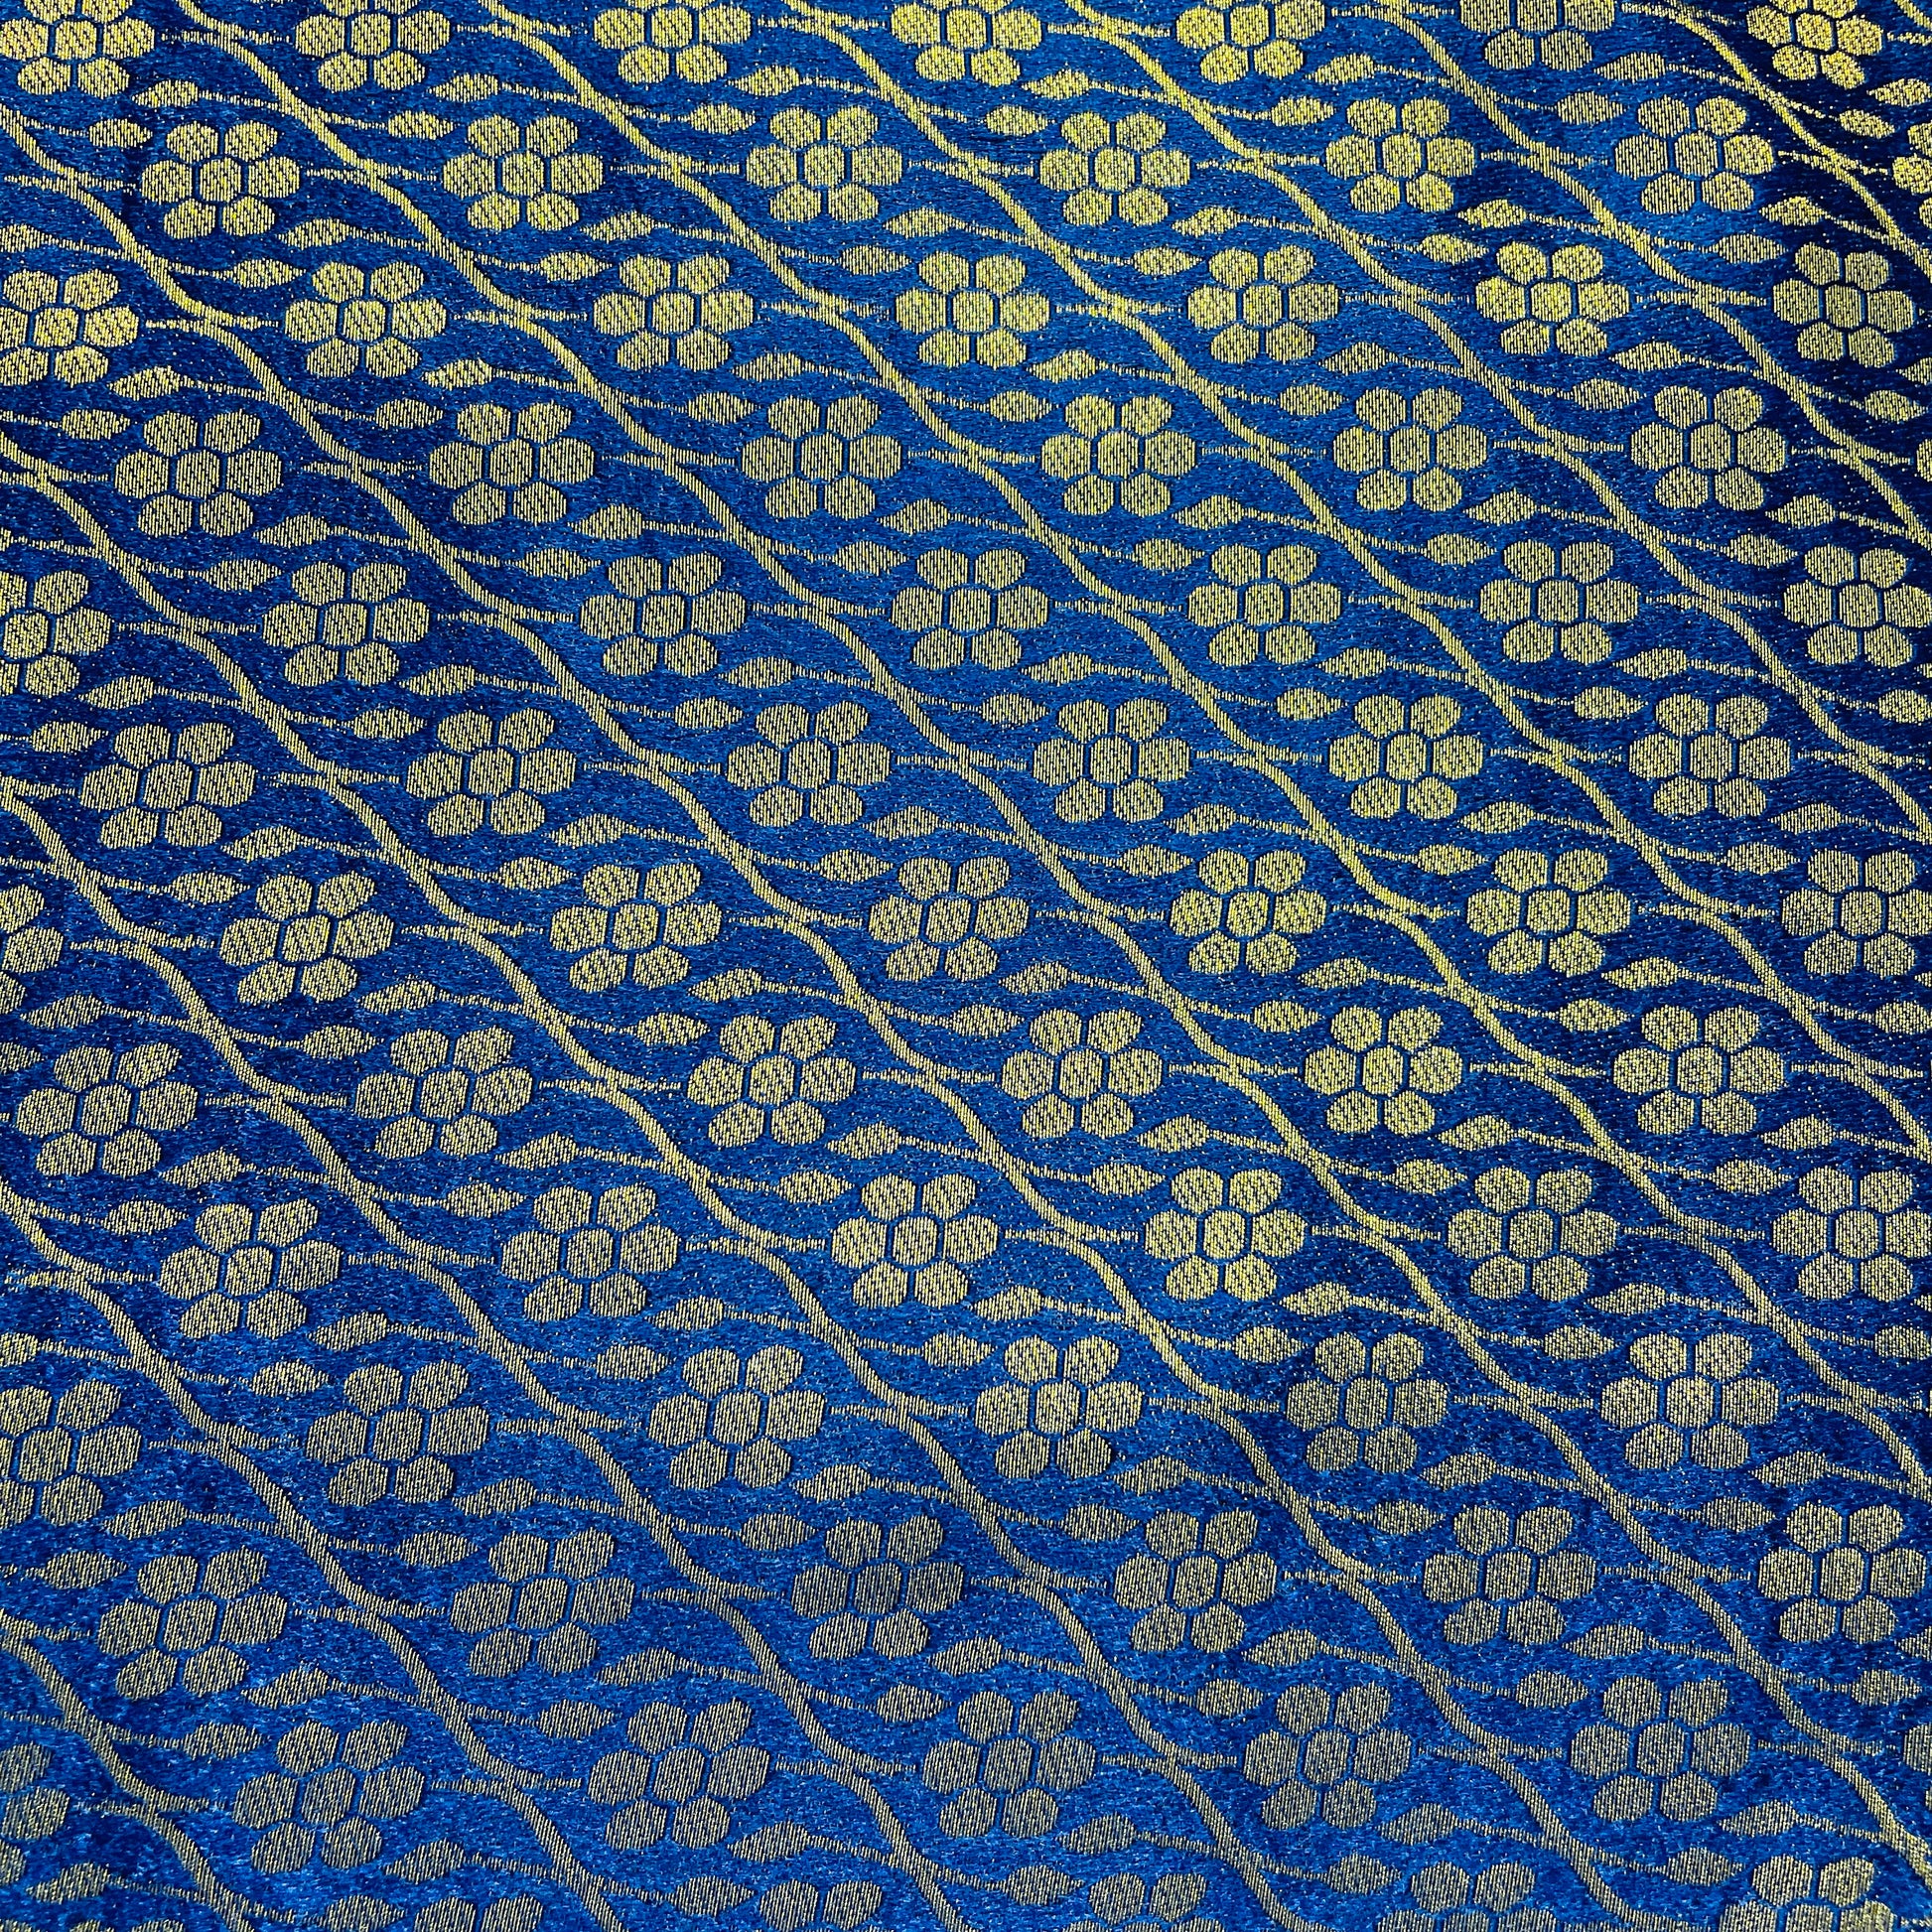 Navy Blue with Gold Zari Floral Banarasi Brocade Fabric - TradeUNO